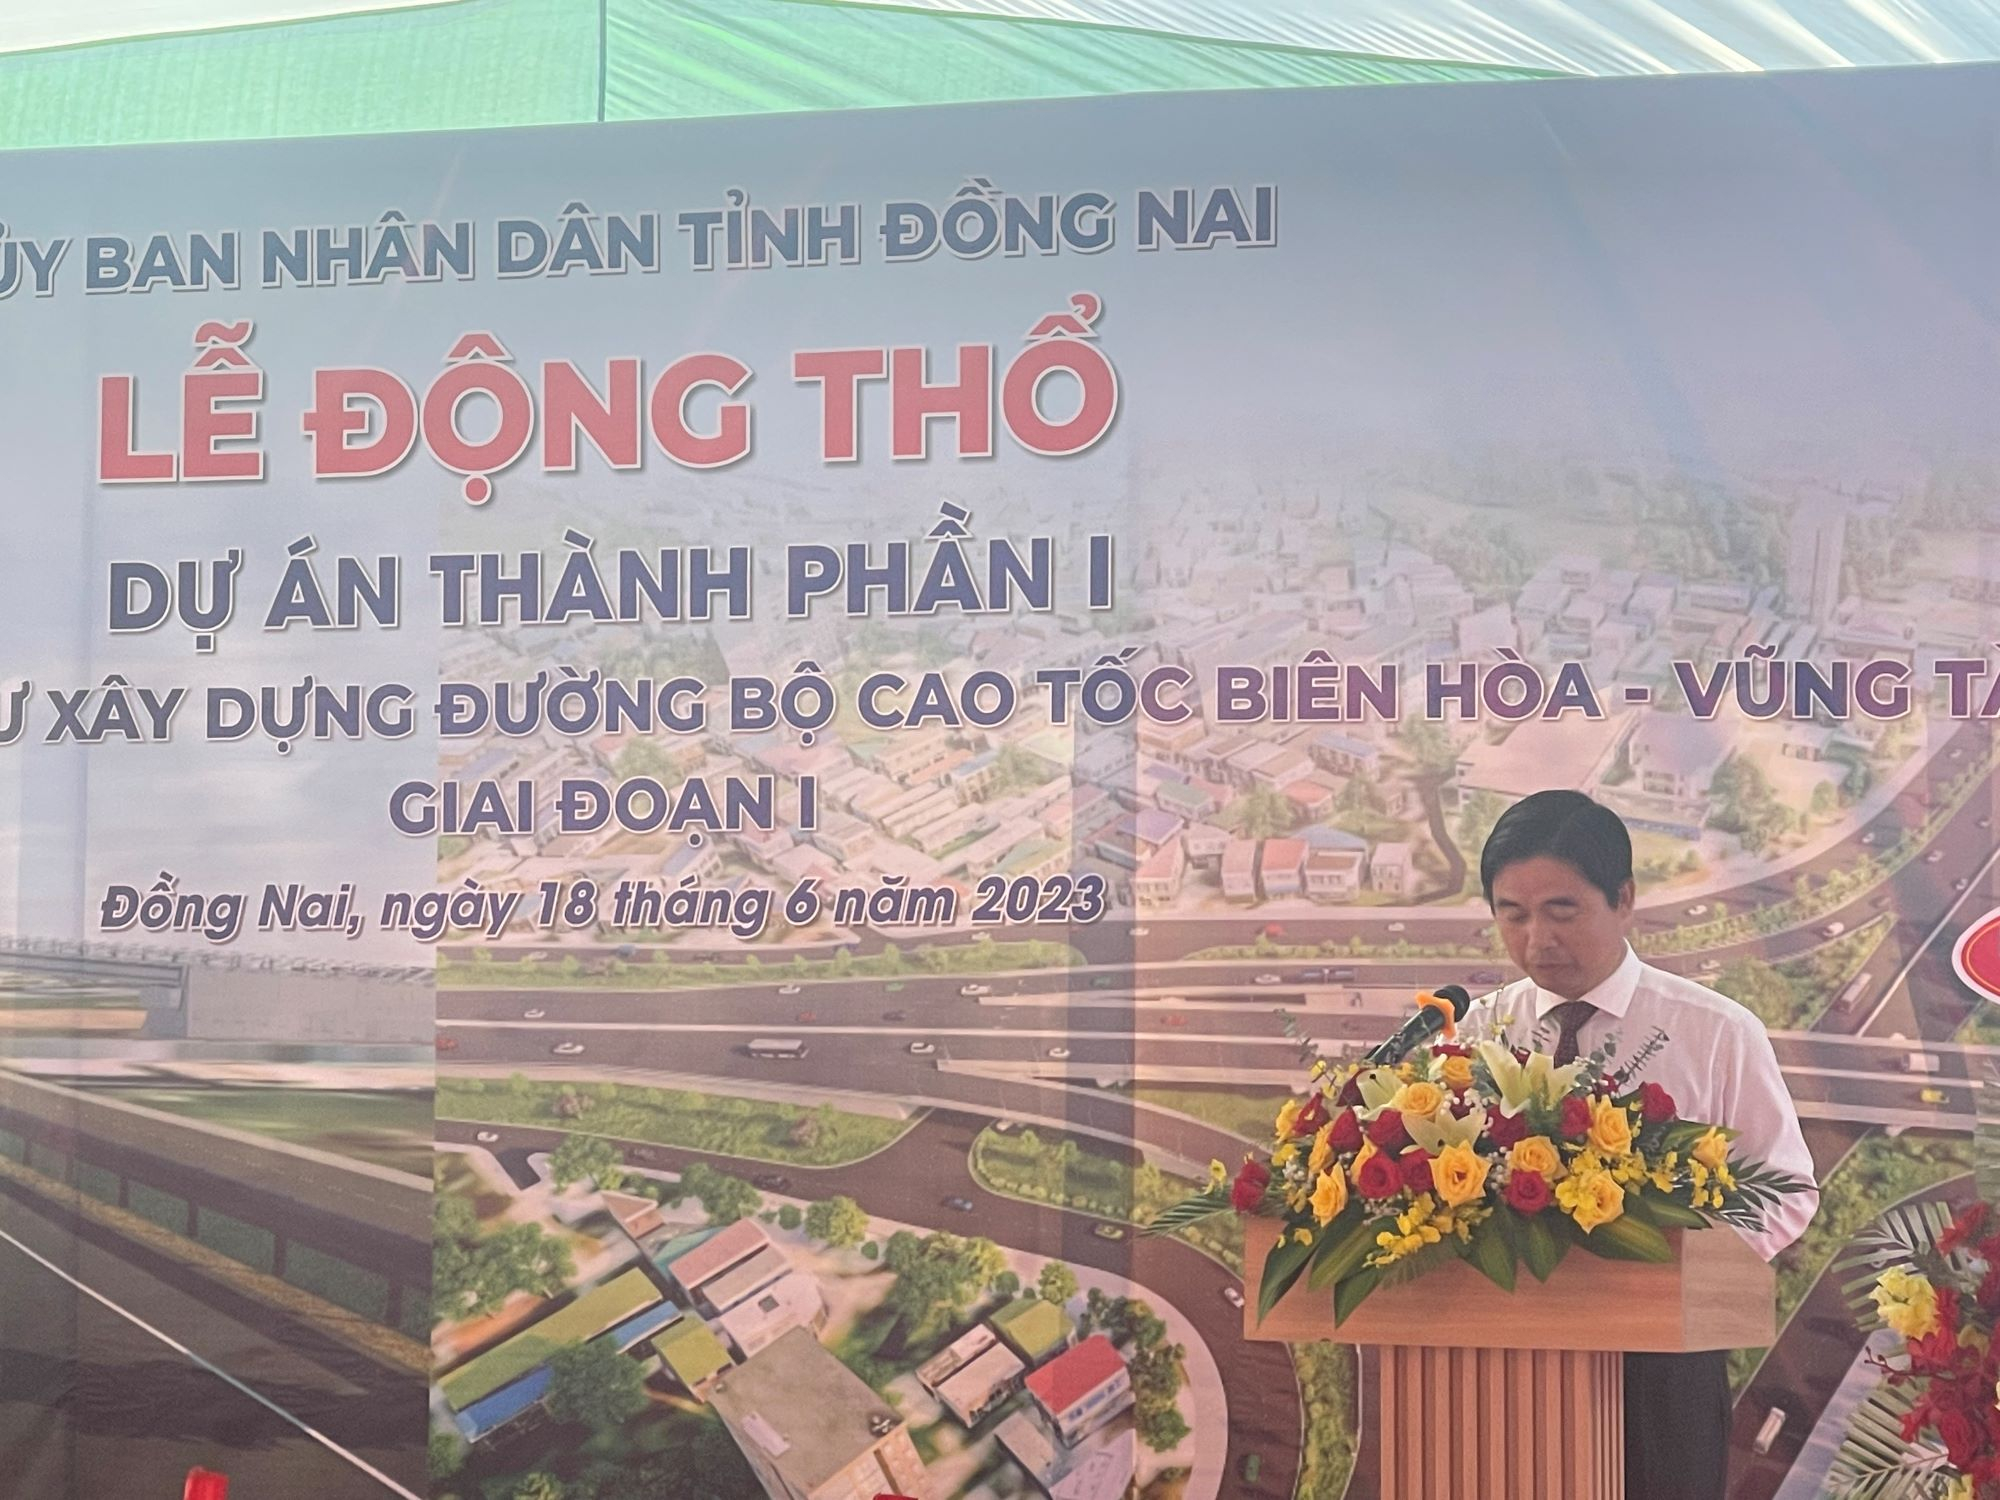 Lễ động thổ dự án thành phần 1 tại Đồng Nai thuộc dự án đường cao tốc Biên Hoà - Vũng Tàu giai đoạn 1.